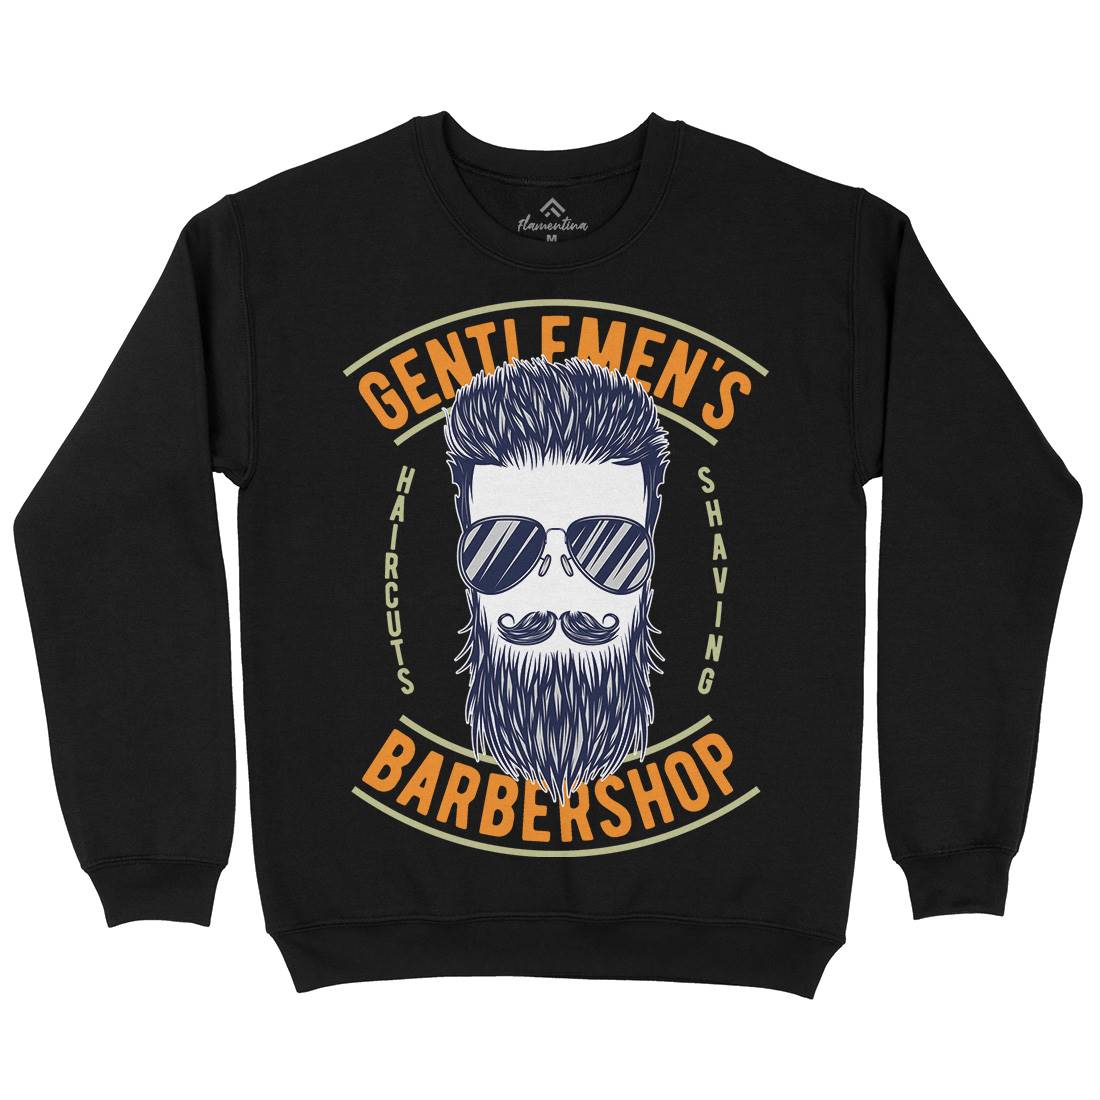 Barbershop Kids Crew Neck Sweatshirt Barber B782